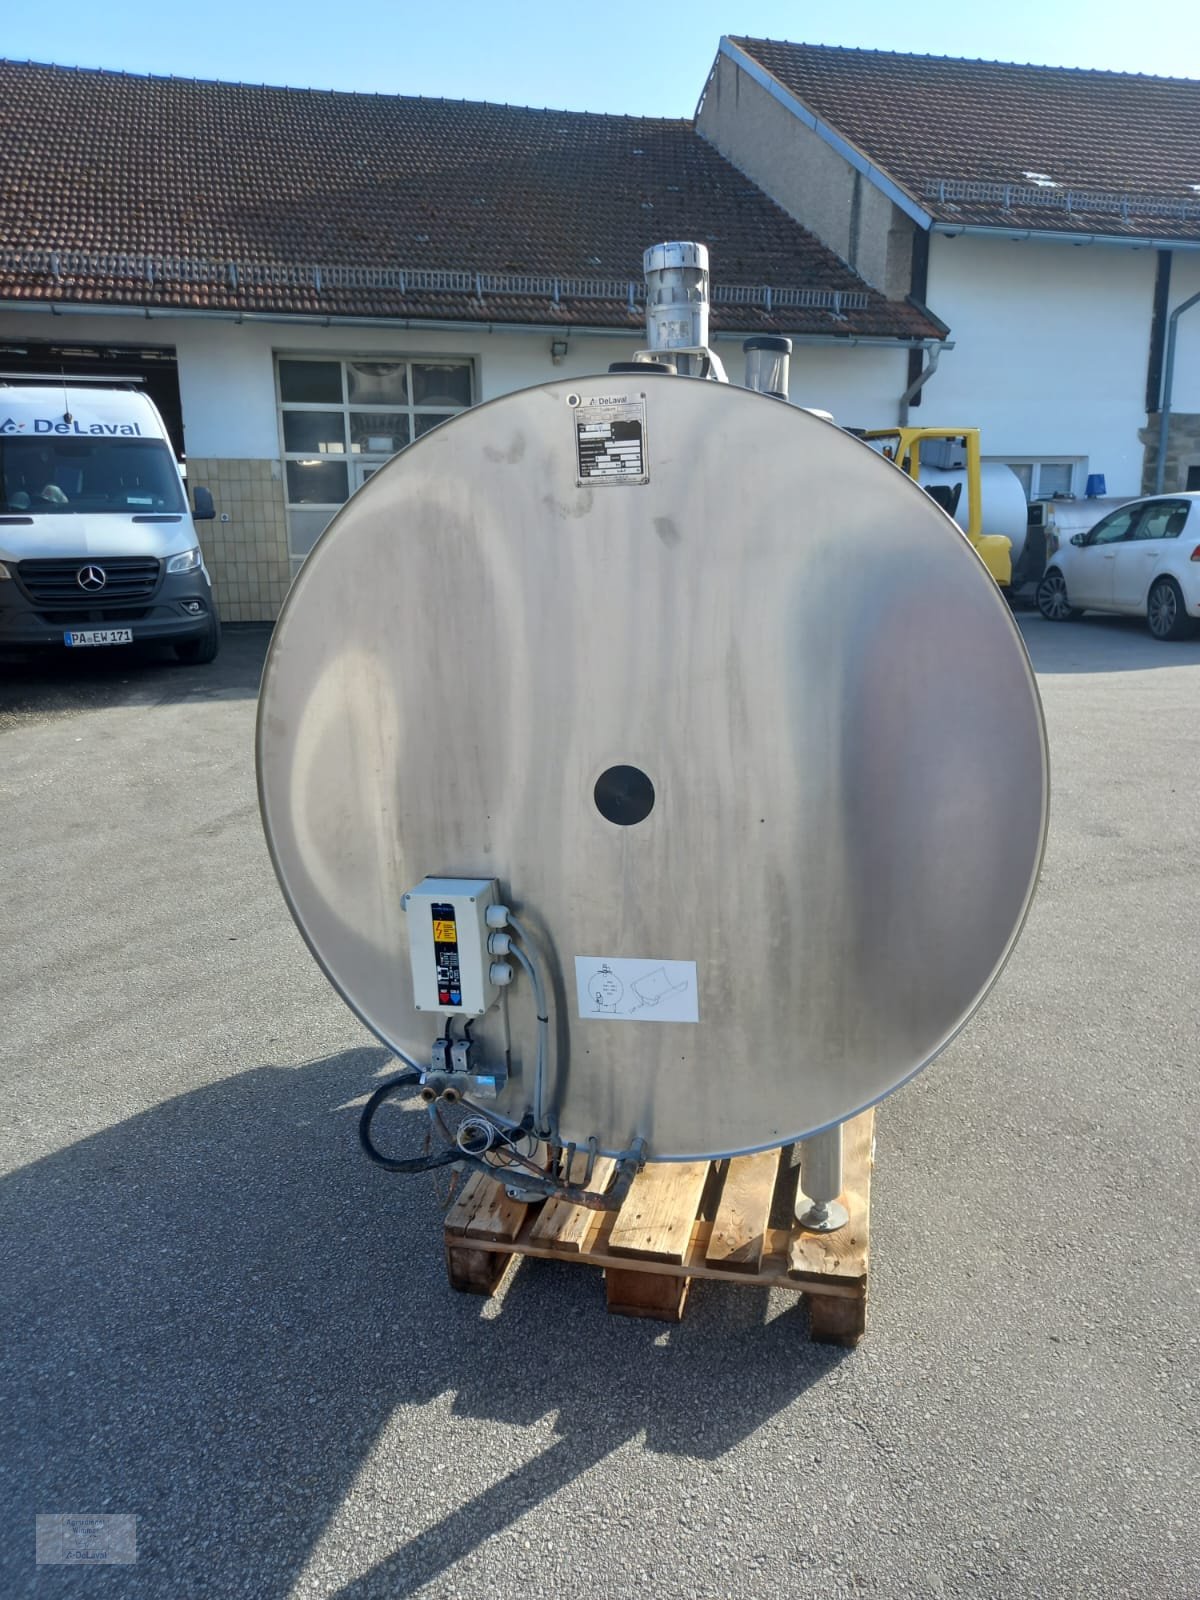 Milchkühltank типа DeLaval DXCR, Gebrauchtmaschine в Hutthurm (Фотография 1)